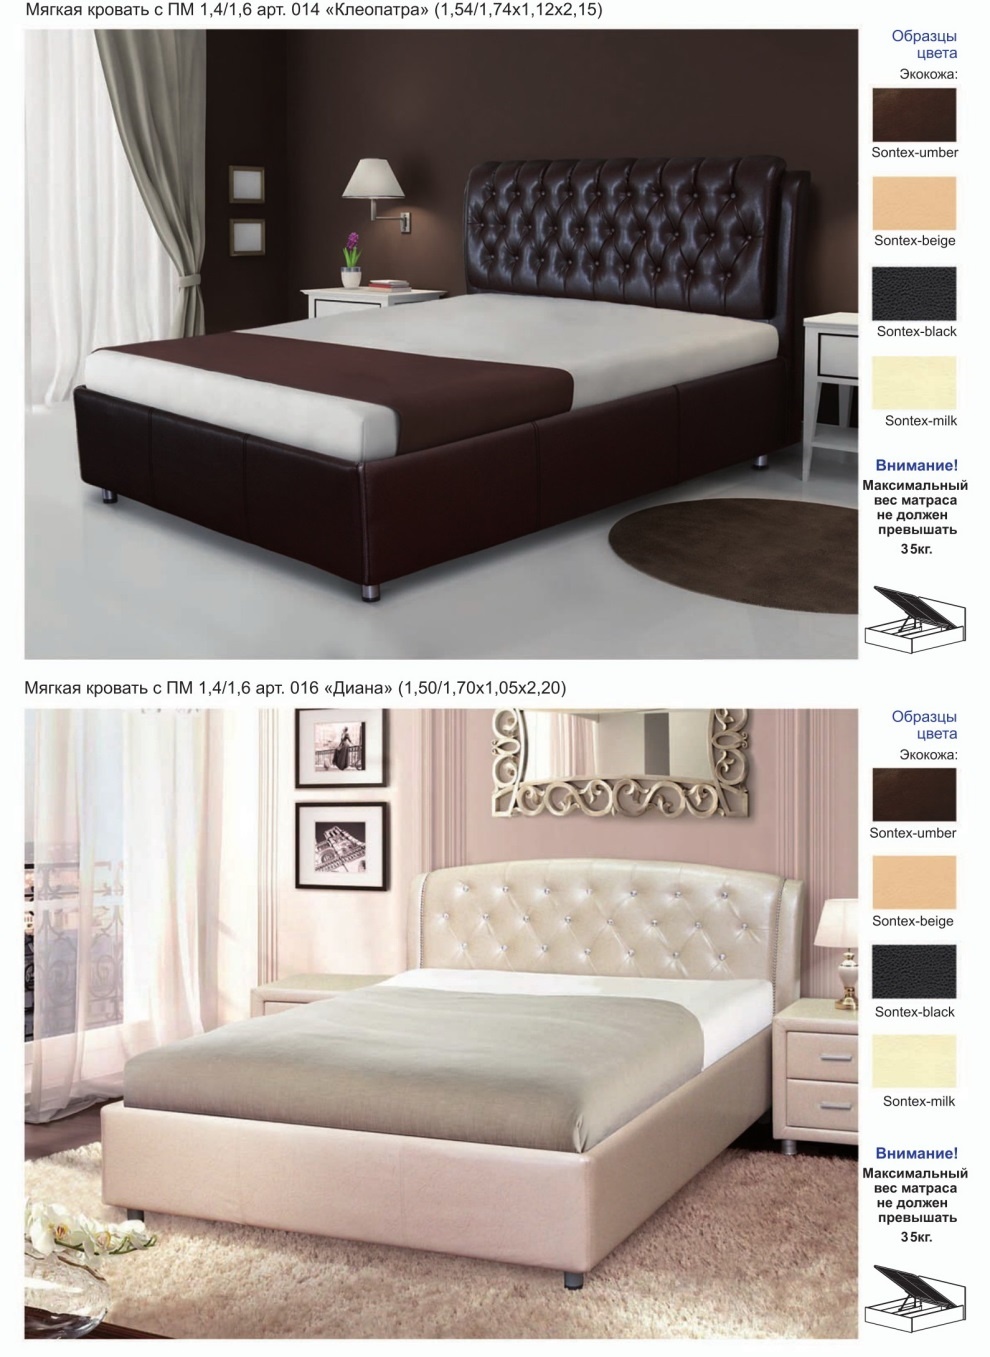 Двуспальная кровать Клеопатра Диал Мебель купить в Беларуси со скидкой. Фото и цены